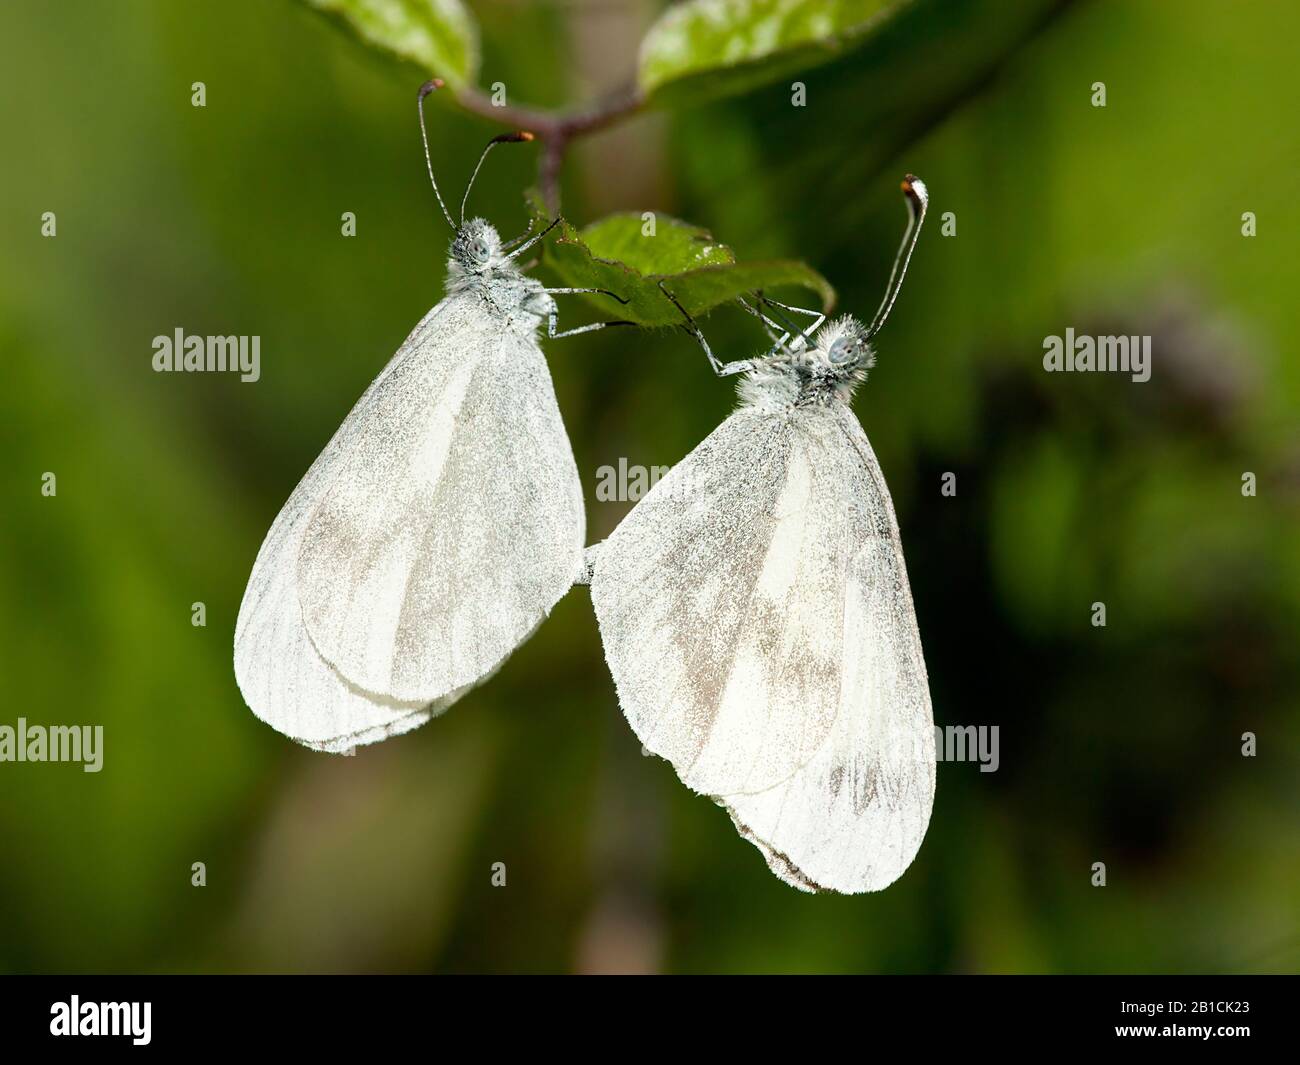 Farfalla bianca in legno, bianca in legno (Leptidea sinapis), due farfalle bianche in legno su una foglia, Olanda, Limburgo Foto Stock